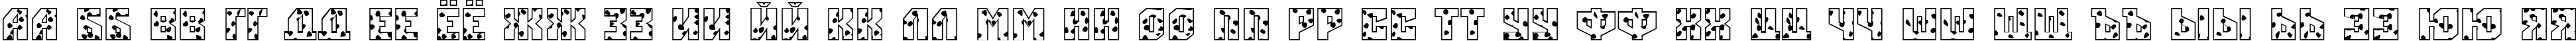 Пример написания русского алфавита шрифтом a_SimplerSpot